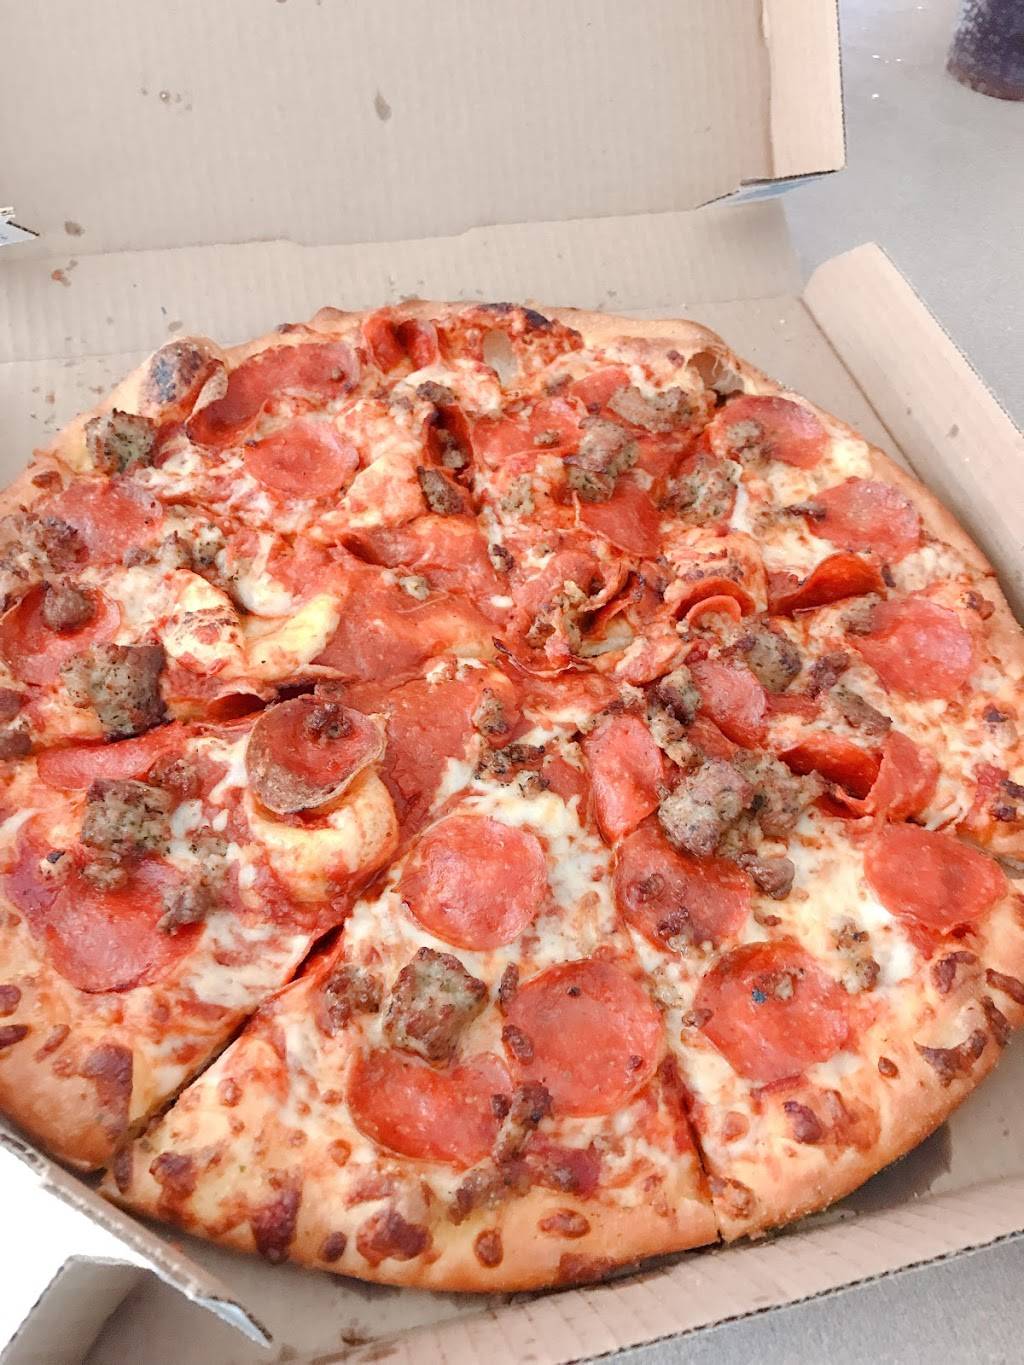 dominos pizza denver